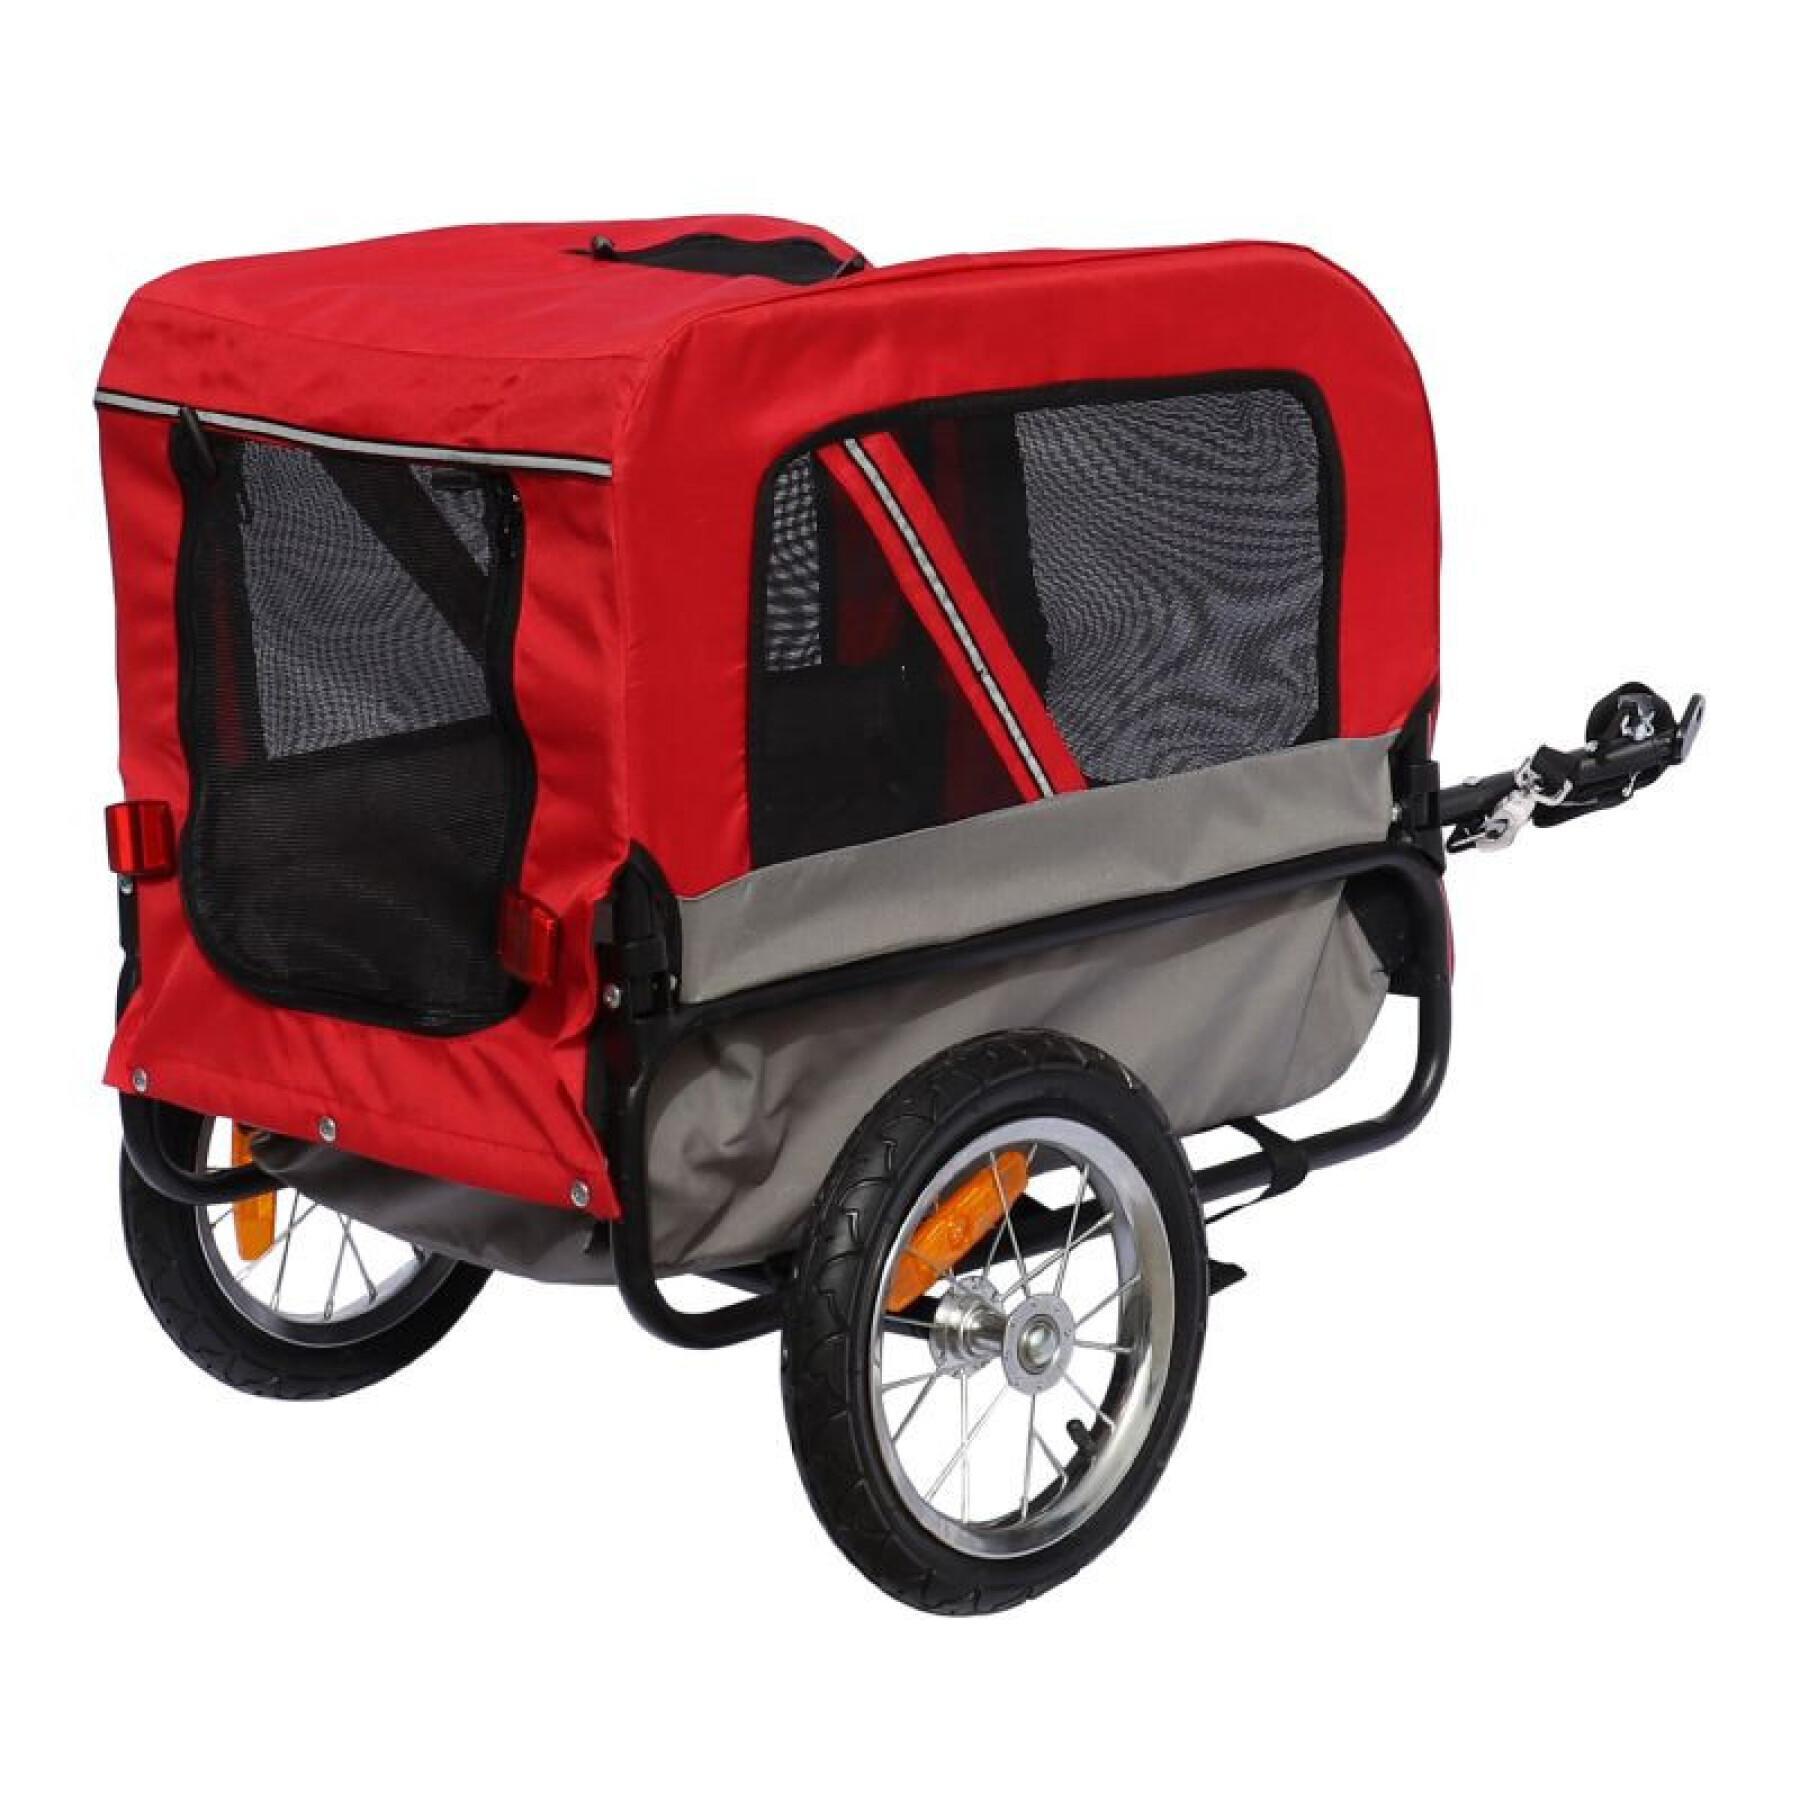 Reboque utilitário com rodas e fixação ao eixo da roda traseira - para transporte de cães e bagagens - 2 aberturas (frente+traseira) + braço extra P2R Maxi